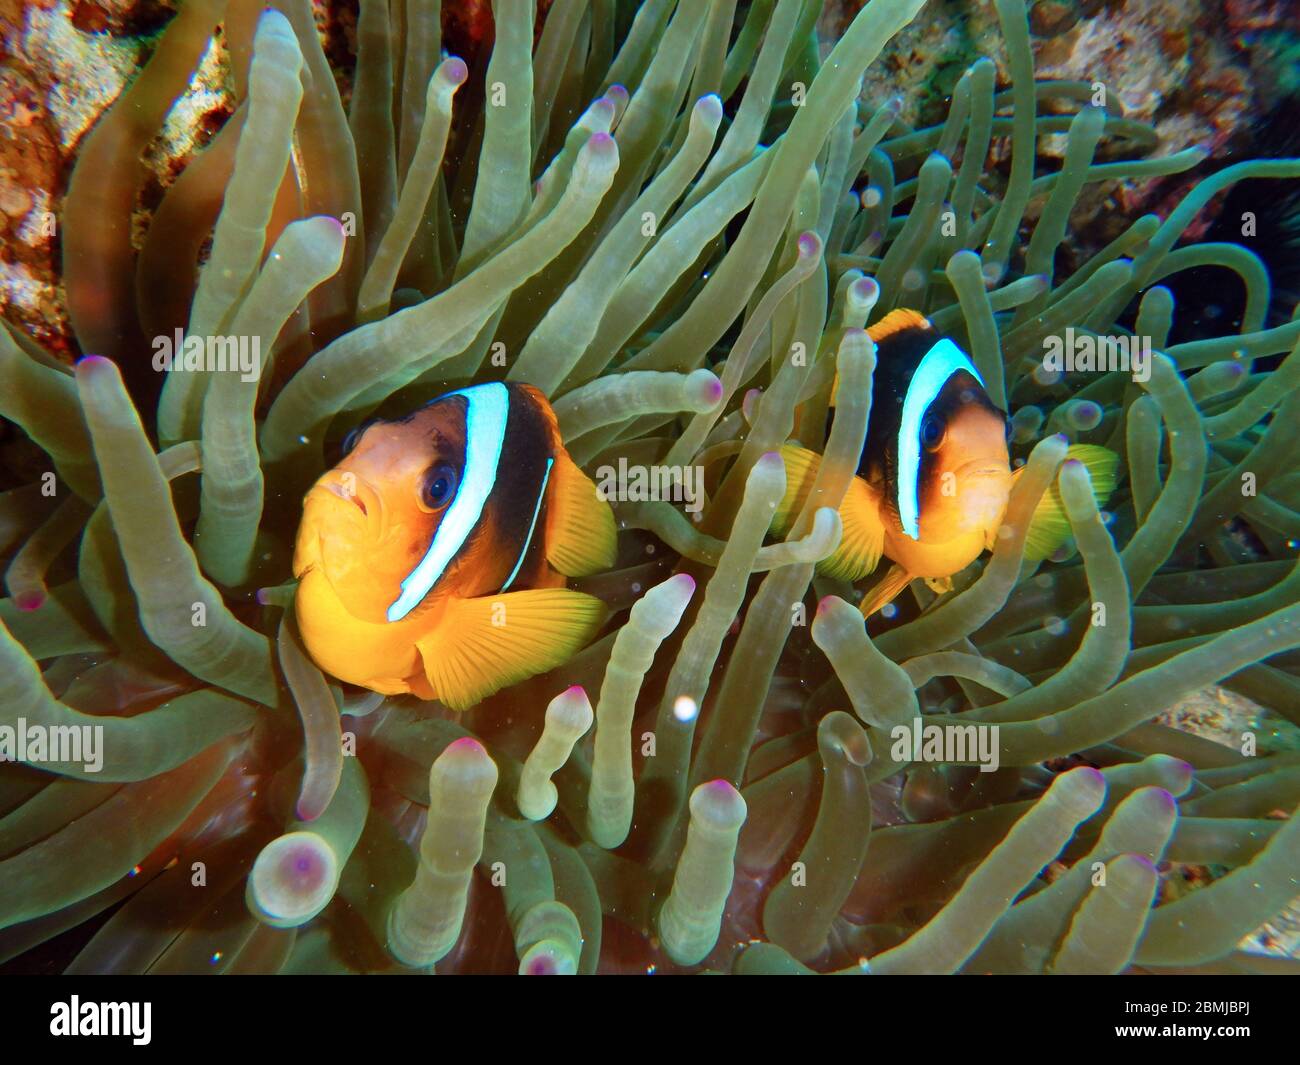 Nemo-Fische, Seeanemone, Anemonenfische, Amphiprioninae, Clownfische  Stockfotografie - Alamy